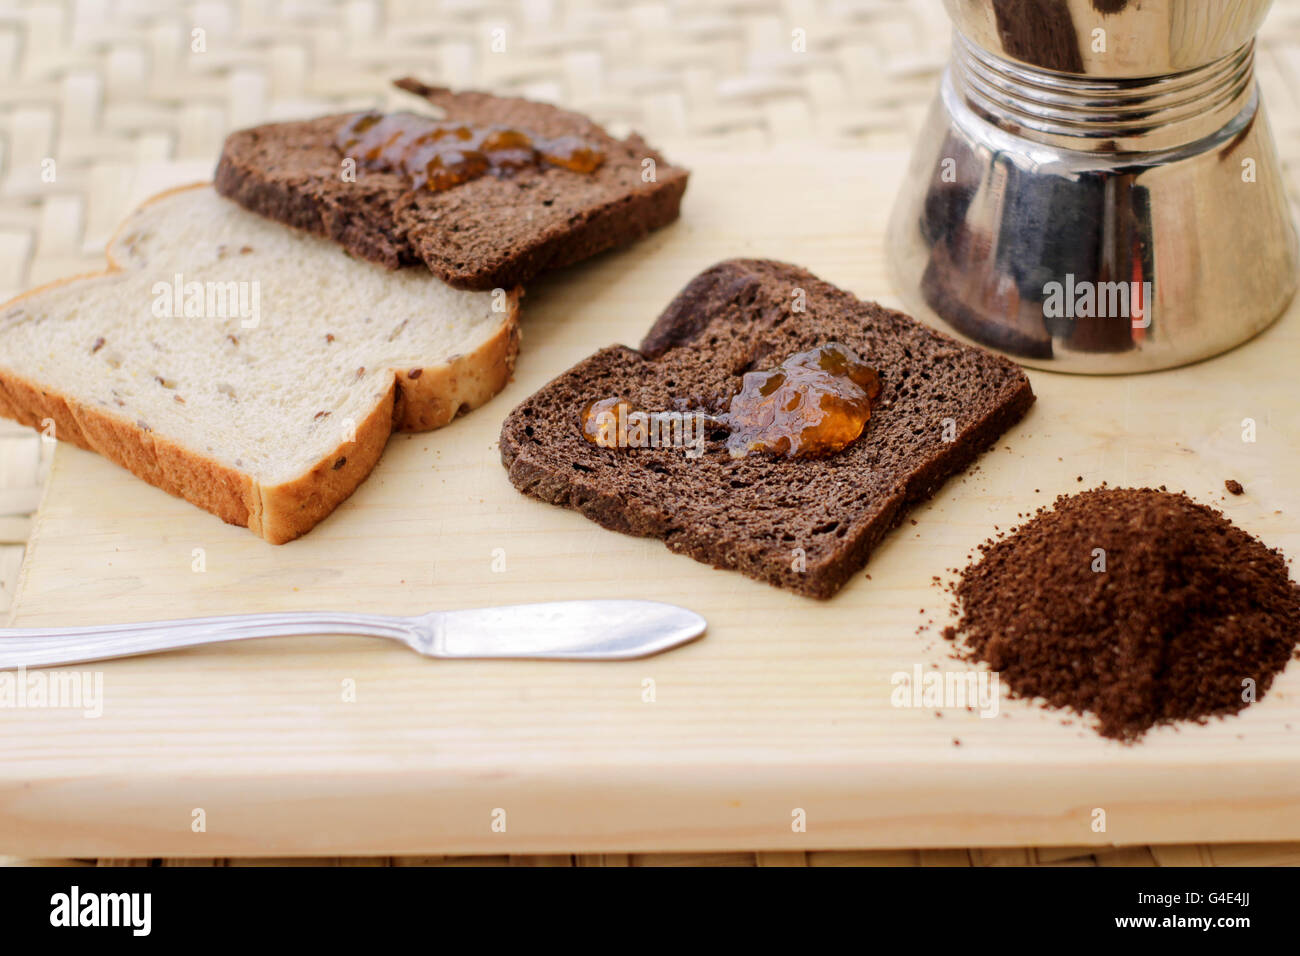 Fotografía de unas tostadas con mermelada y otros ingredientes Foto de stock